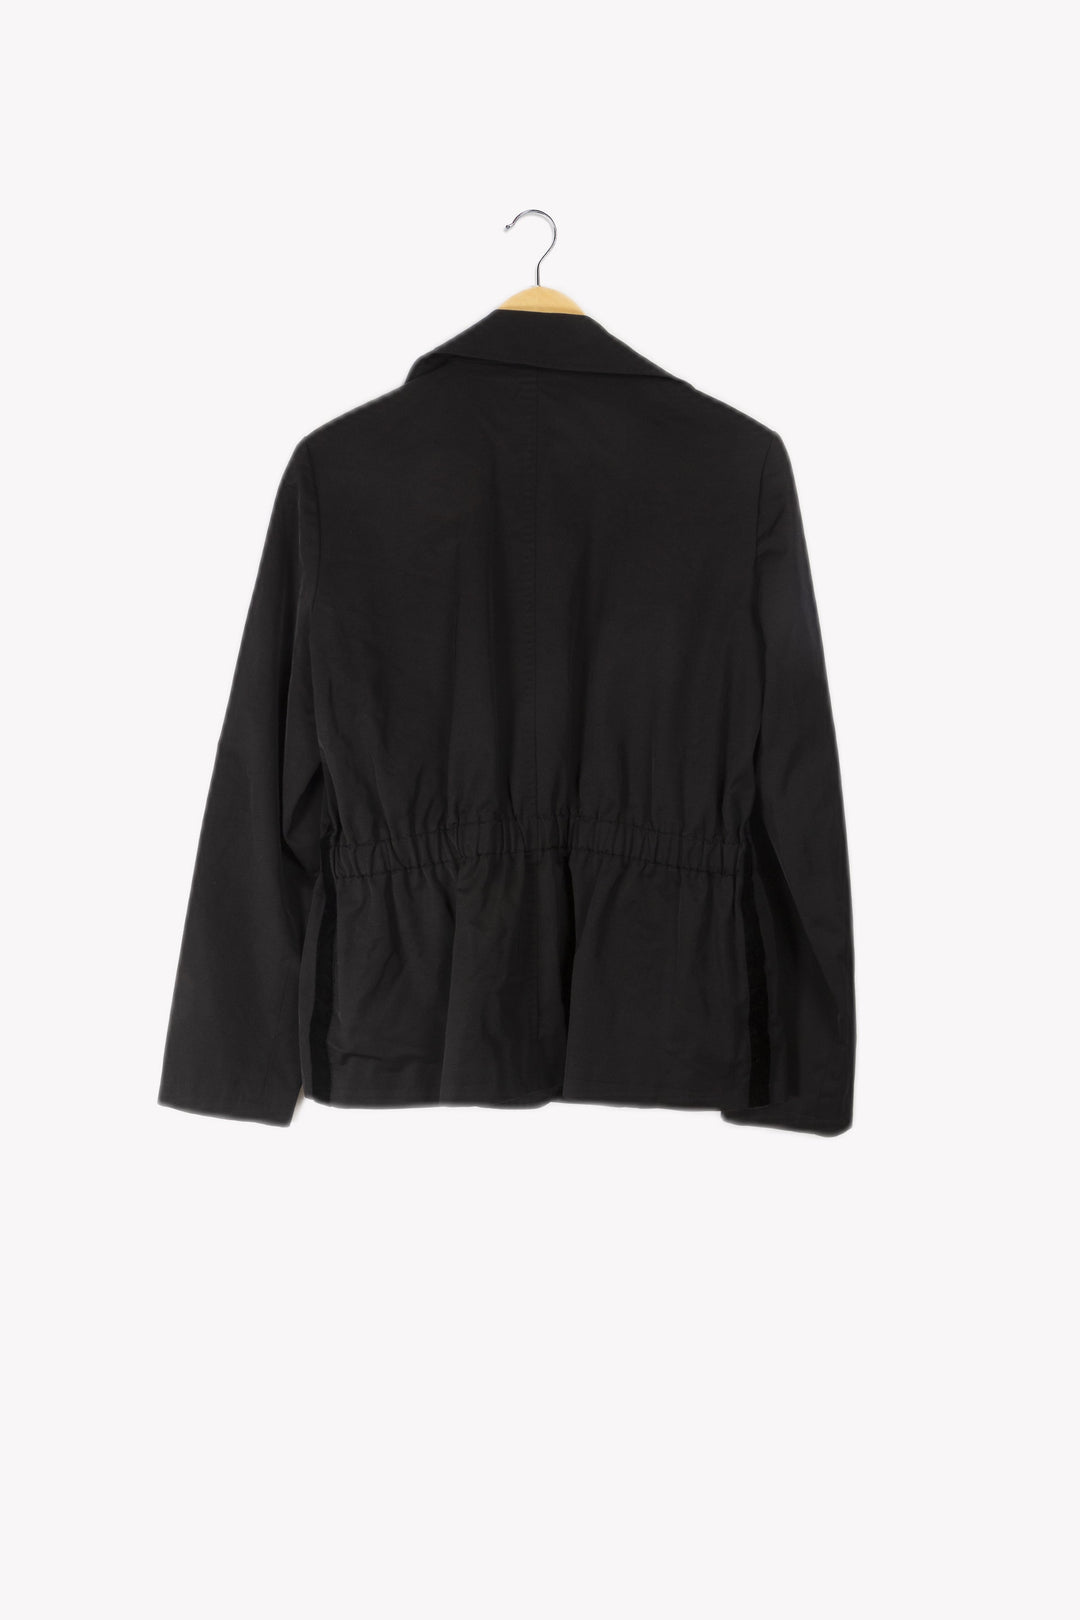 Short black coat - XL / 42